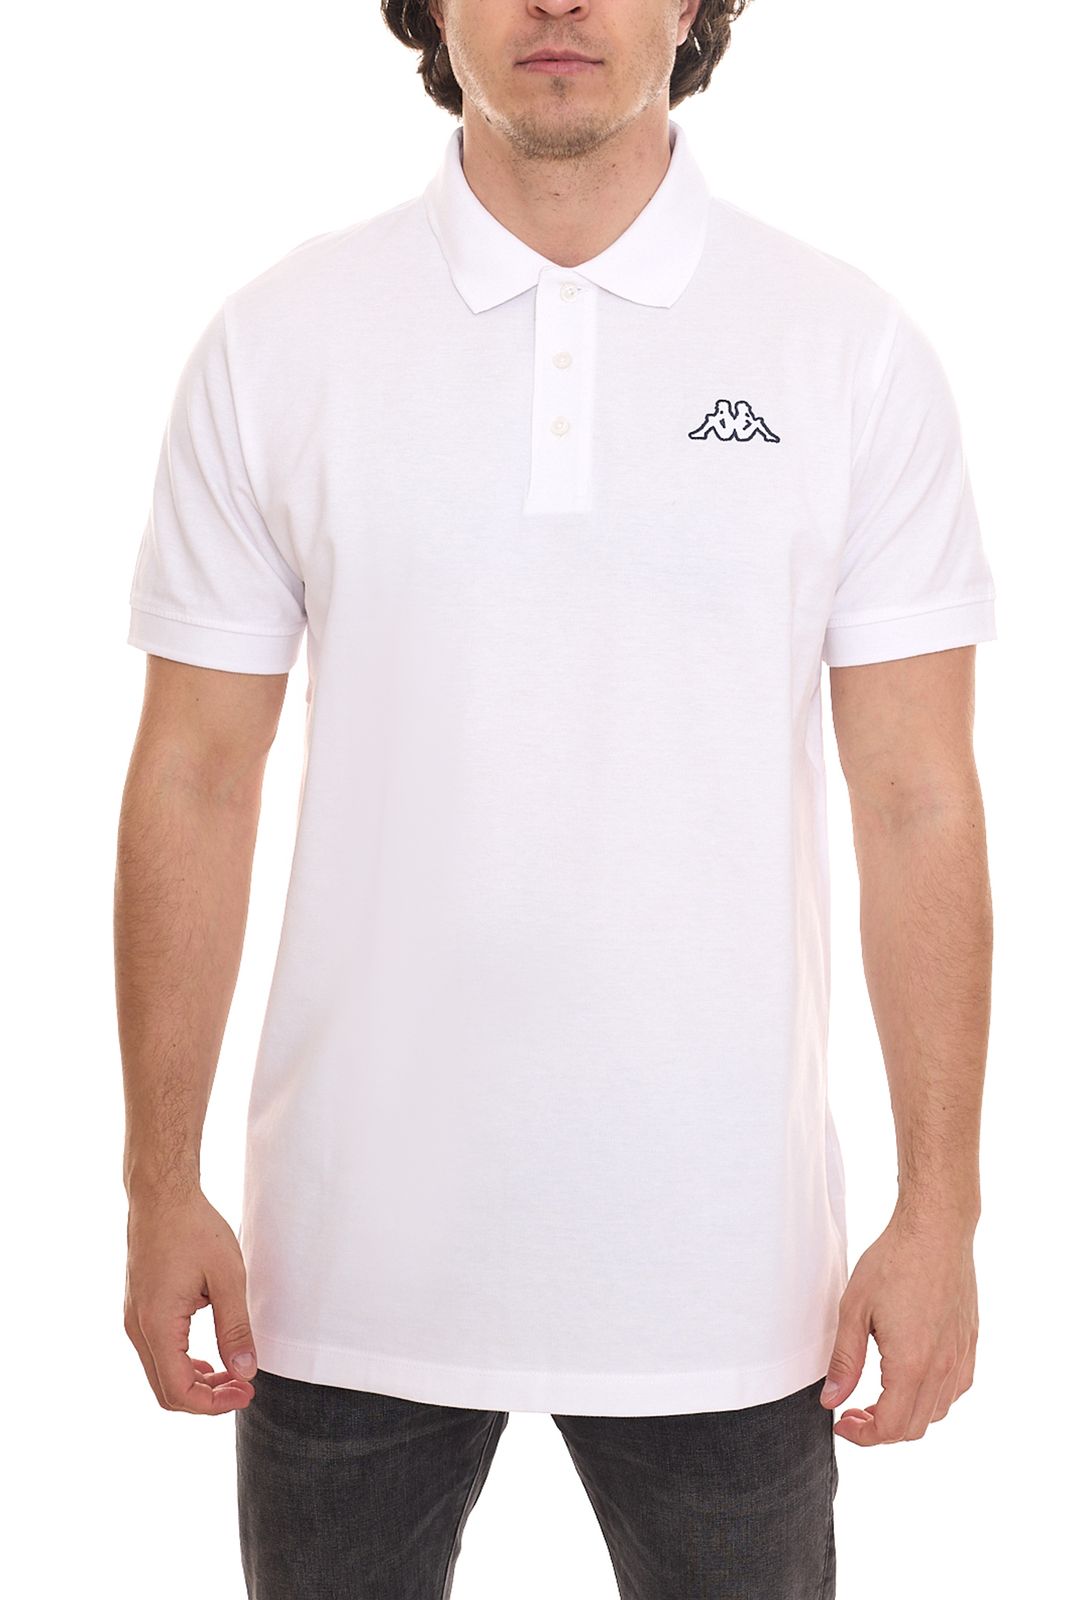 Kappa Veeny Pique Poloshirt Herren Baumwoll-Shirt mit Logo-Stick 707133 Weiß von Kappa